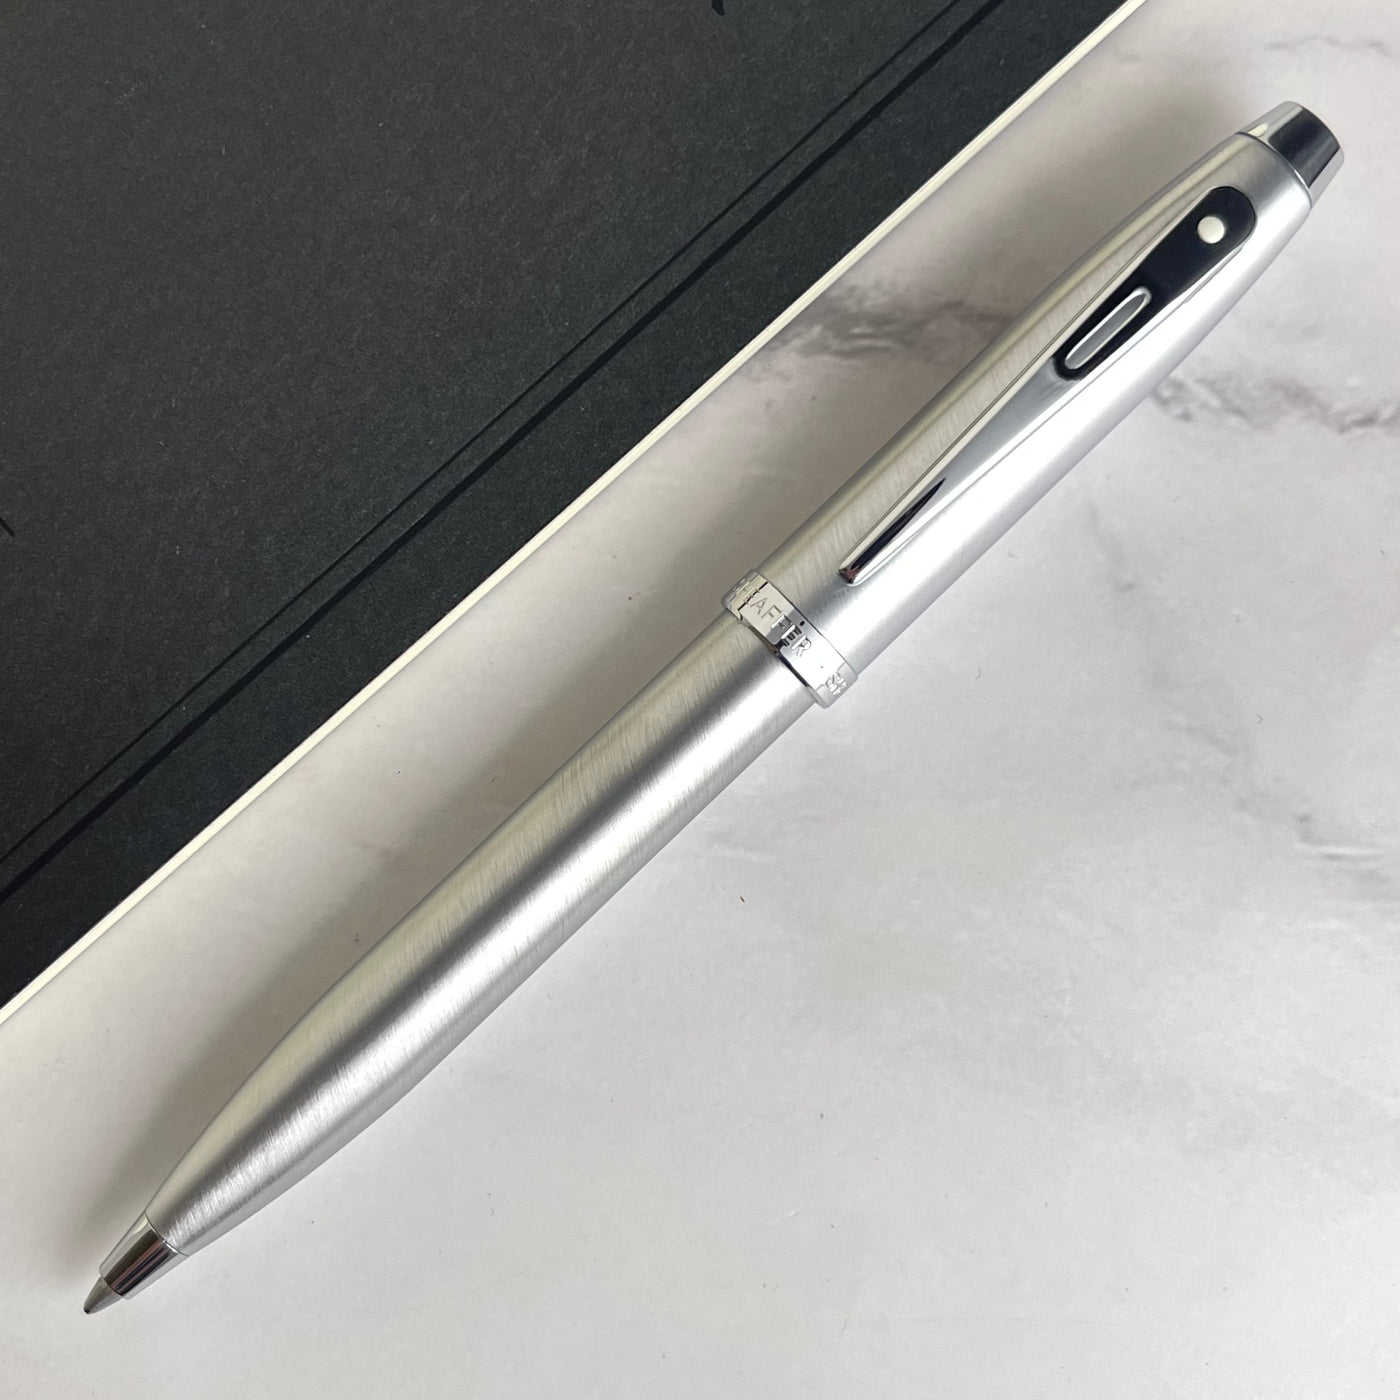 Sheaffer 100 Ballpoint Pen - Brushed Chrome